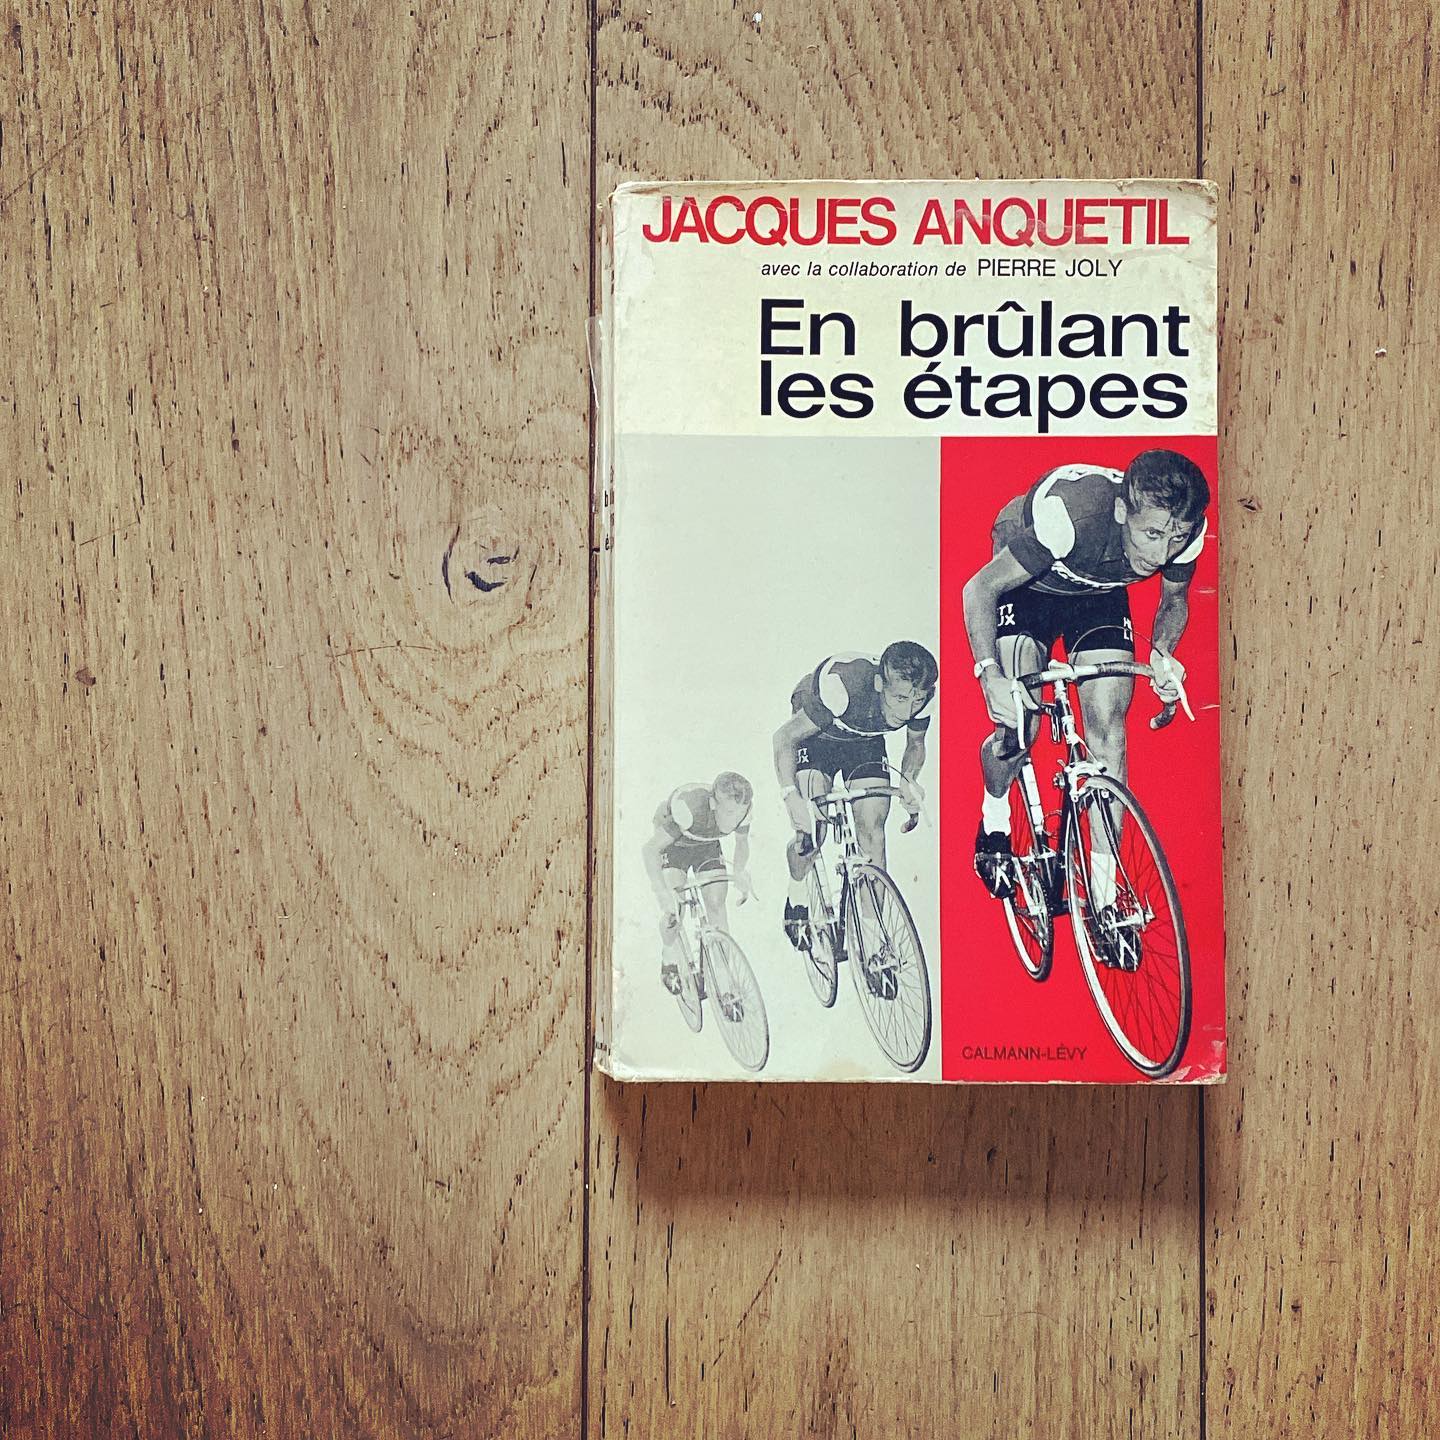 Un printemps de lectures cyclistes : En brûlant les étapes // Jacques Anquetil [avec la collaboration de Pierre Joly] // Éditions @calmann.levy // 1966

Merci @rochefortemmaus !

#jacquesanquetil #pierrejoly #calmannlevy  #gravillon #gravillonsite #cycling #velo #bicyclette #bicicleta #bicla #bici #bicicletta #bicycle #bike #cycle #fahrrad #自転車